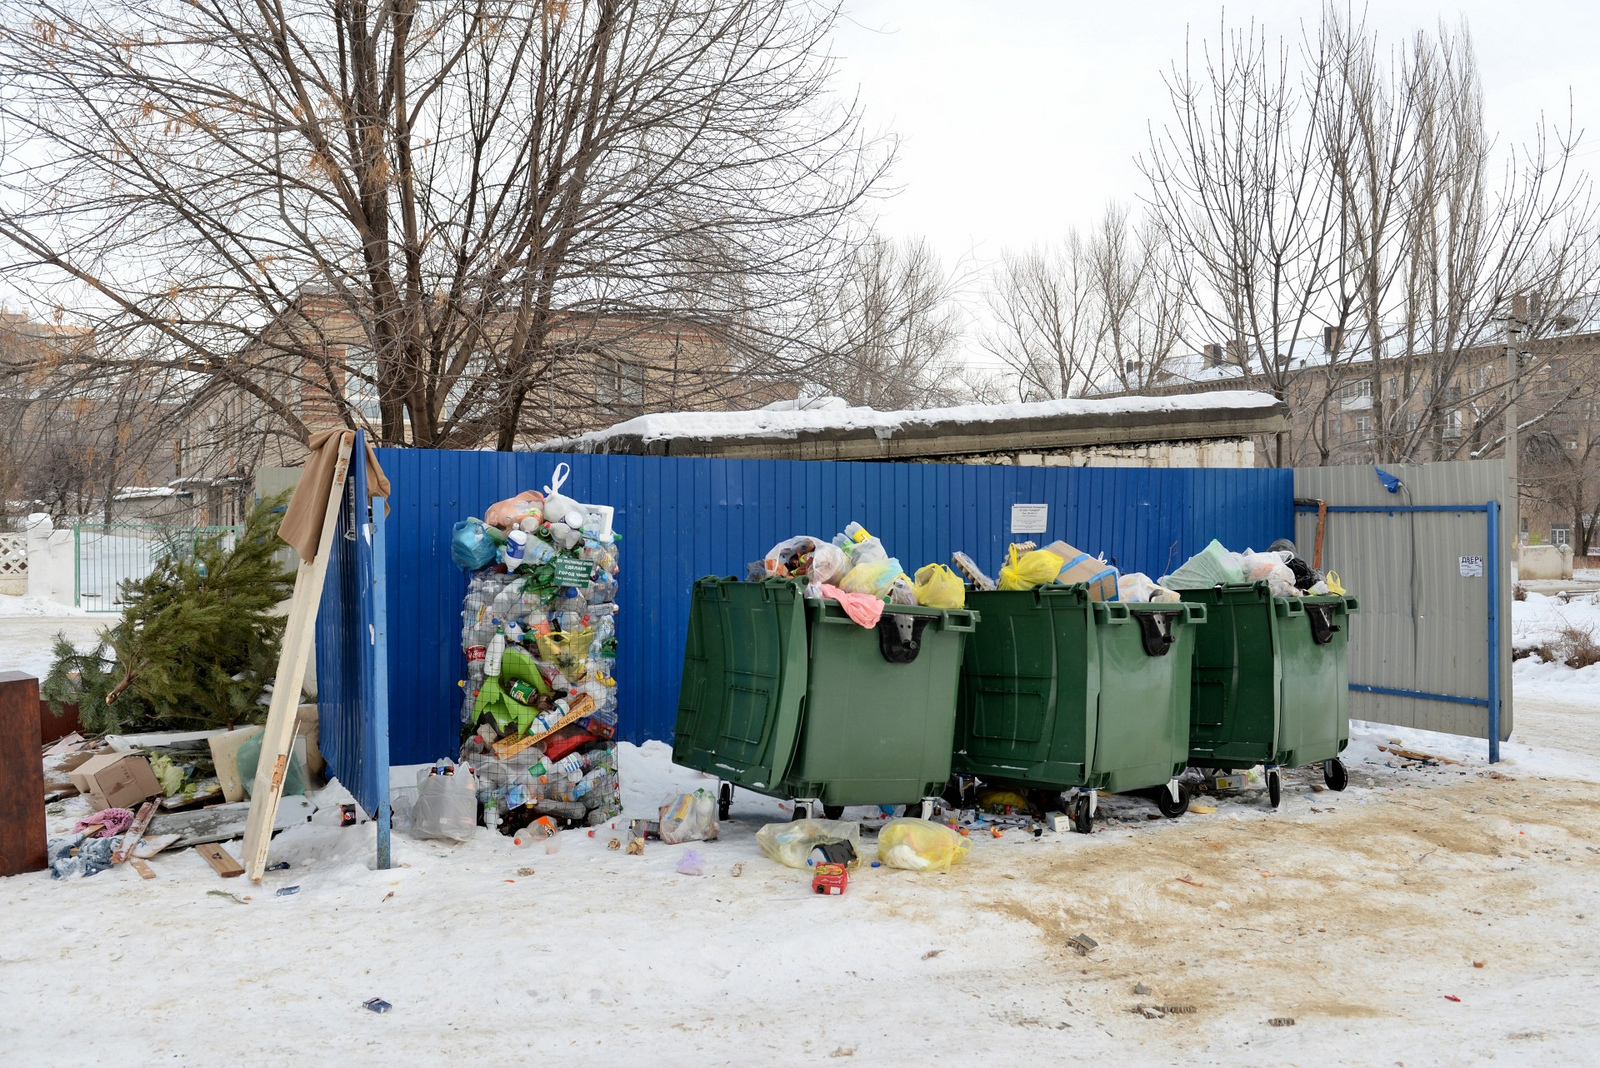 Стали известны адреса, где в Омске установят новые мусорные контейнеры